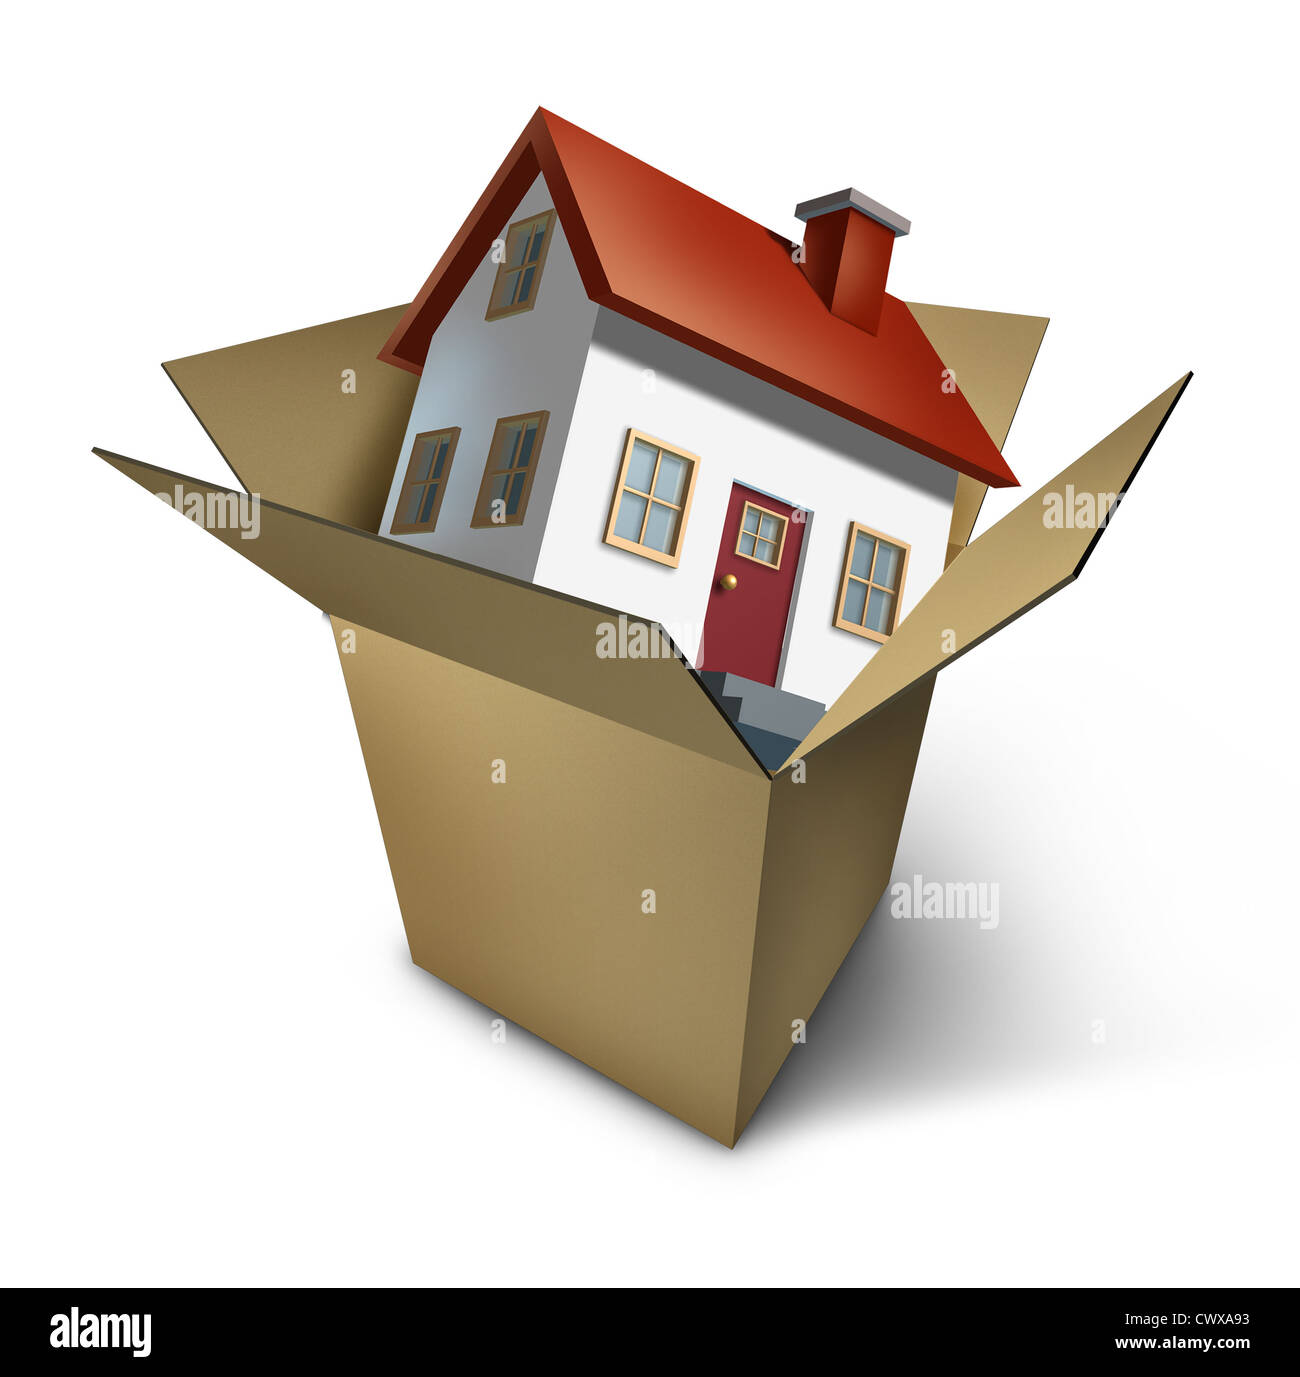 Déménagement maison et aller de jour avec une maison modèle dans une boîte en carton comme une illustration de la bonne santé du marché immobilier et de l'emballage de vente de changer de quartier en raison de travaux d'affaires transfert. Banque D'Images